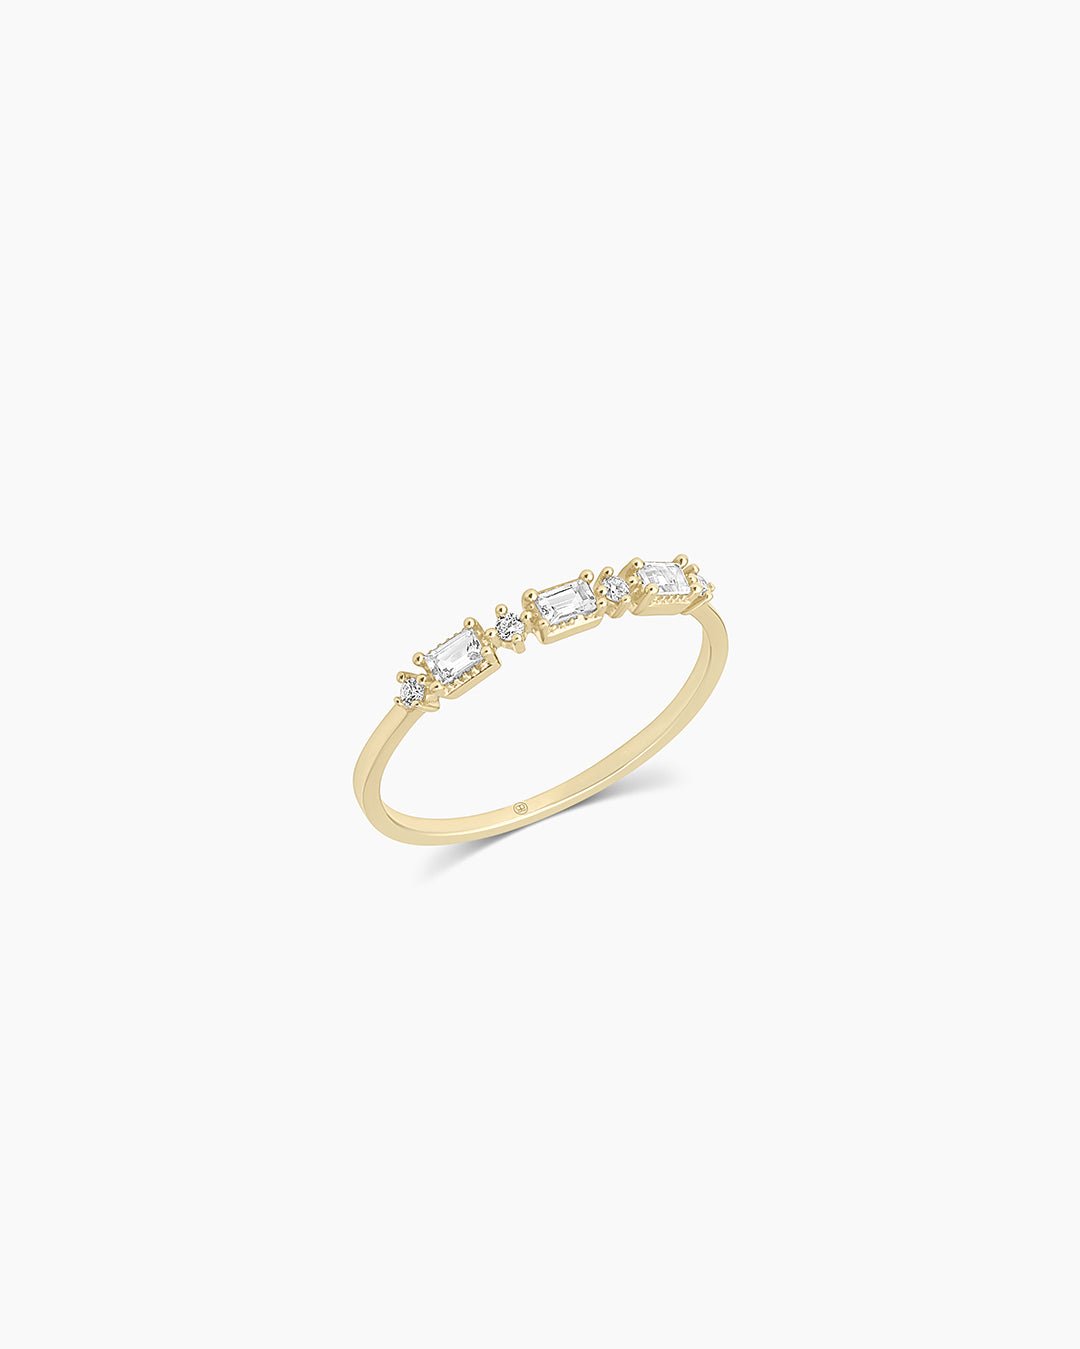 Baguette White Topaz andDiamond Ring || option::14k Solid Gold